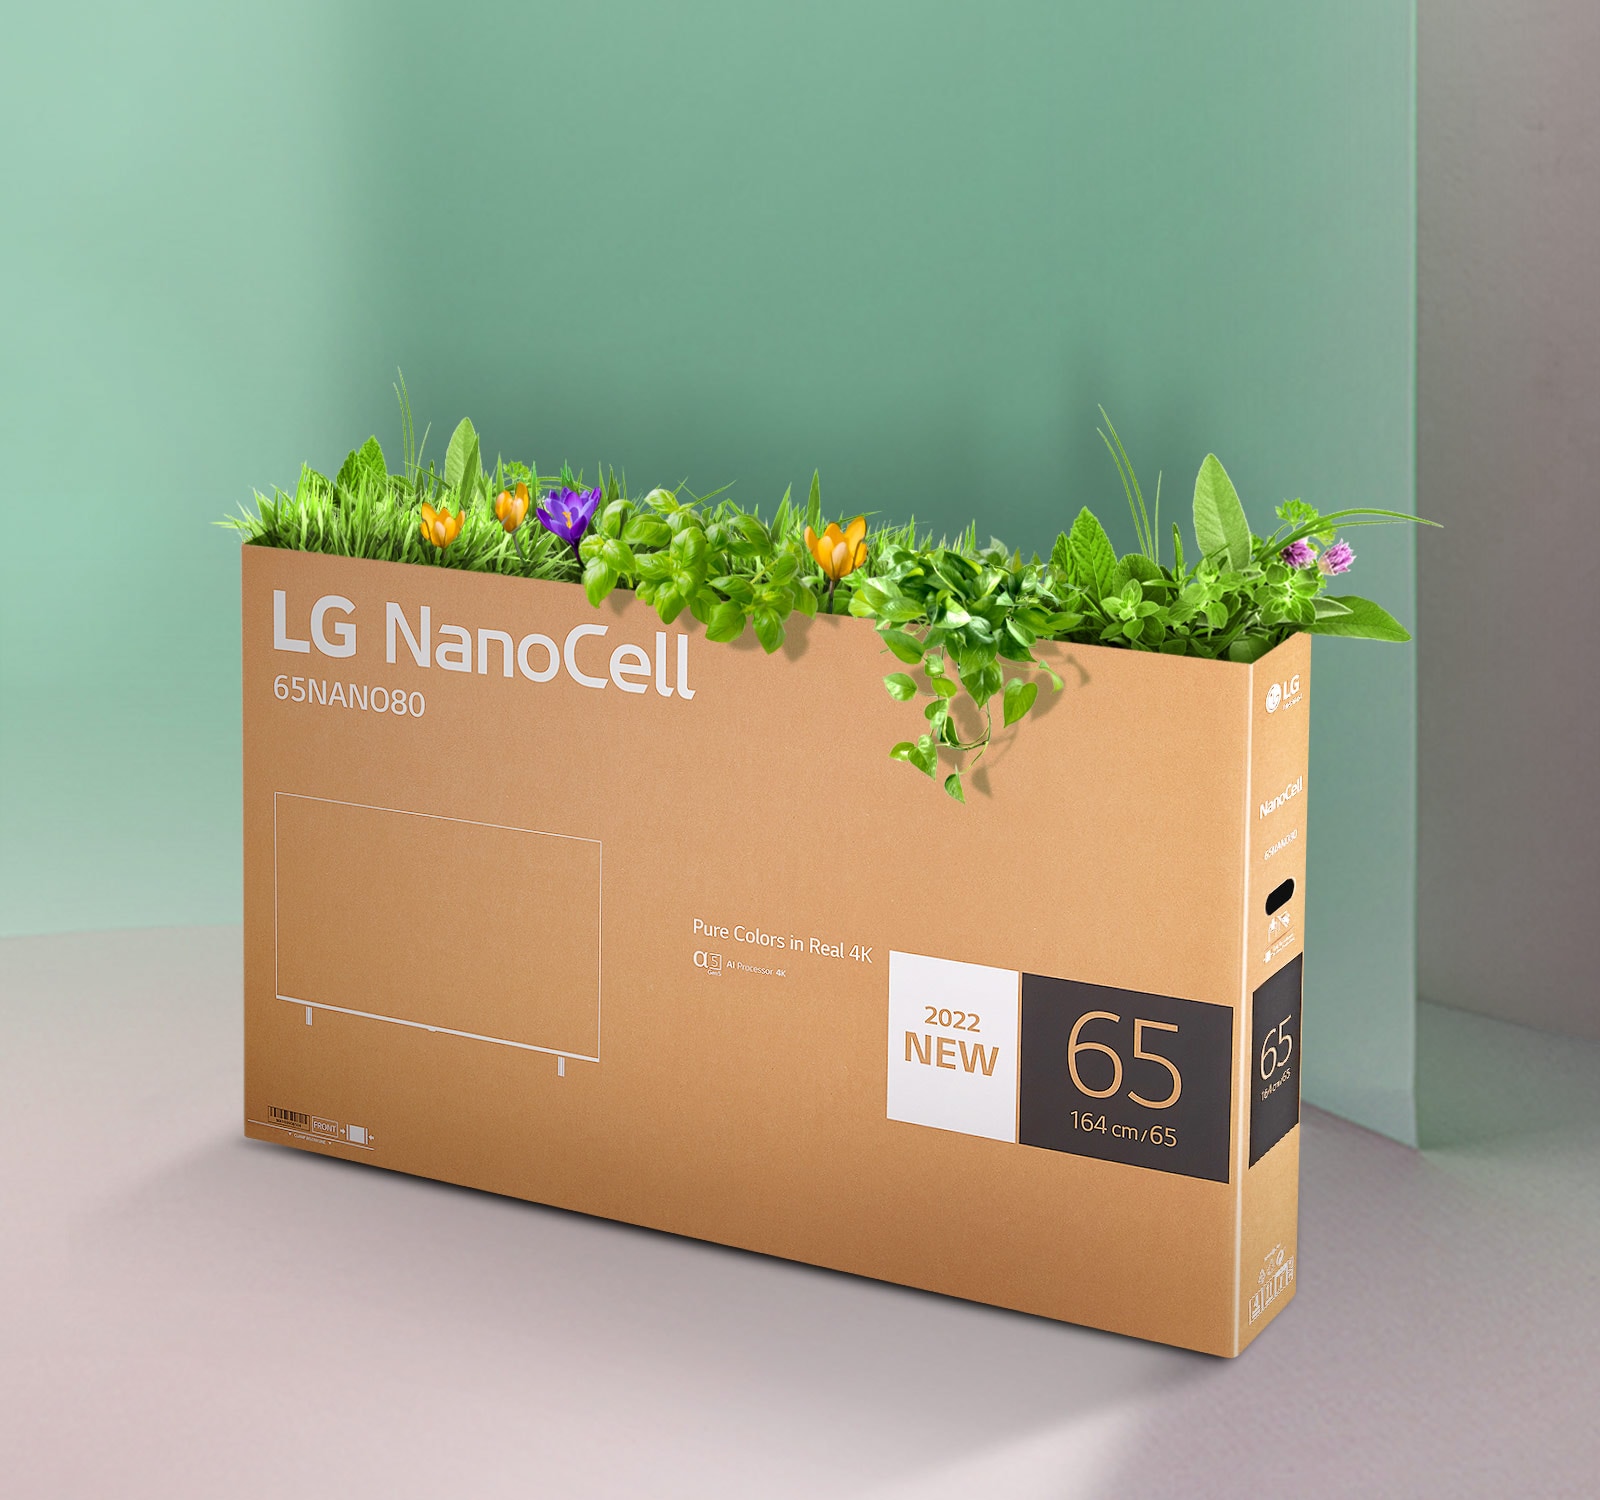 กล่องรีไซเคิลของทีวี LG NanoCell ที่มีดอกไม้และต้นไม้งอกออกมาจากด้านบนของกล่อง